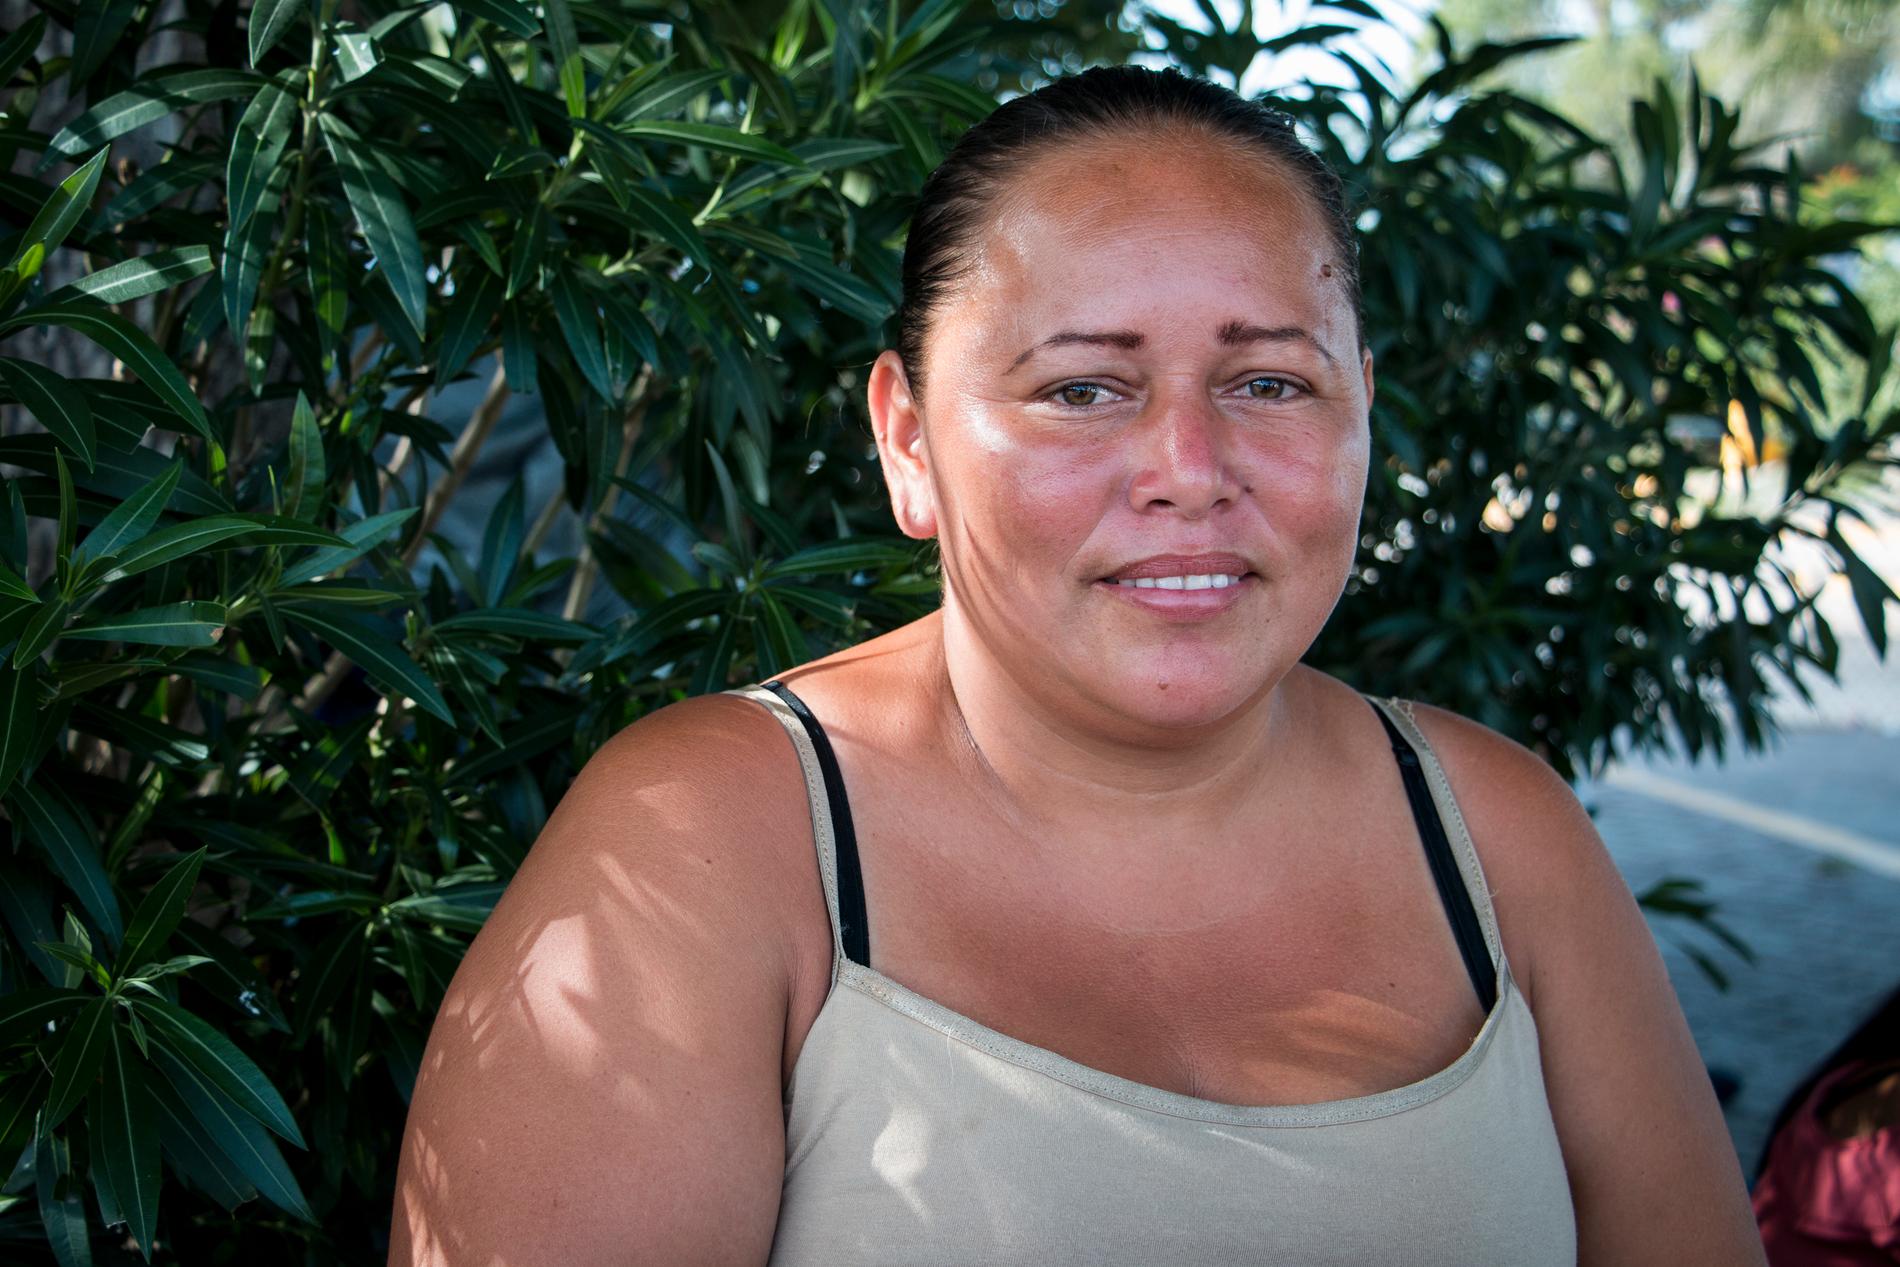 Xiomara Mejía Pineda är övertygad om att köerna är politiskt motiverade, vilket gör henne arg. 